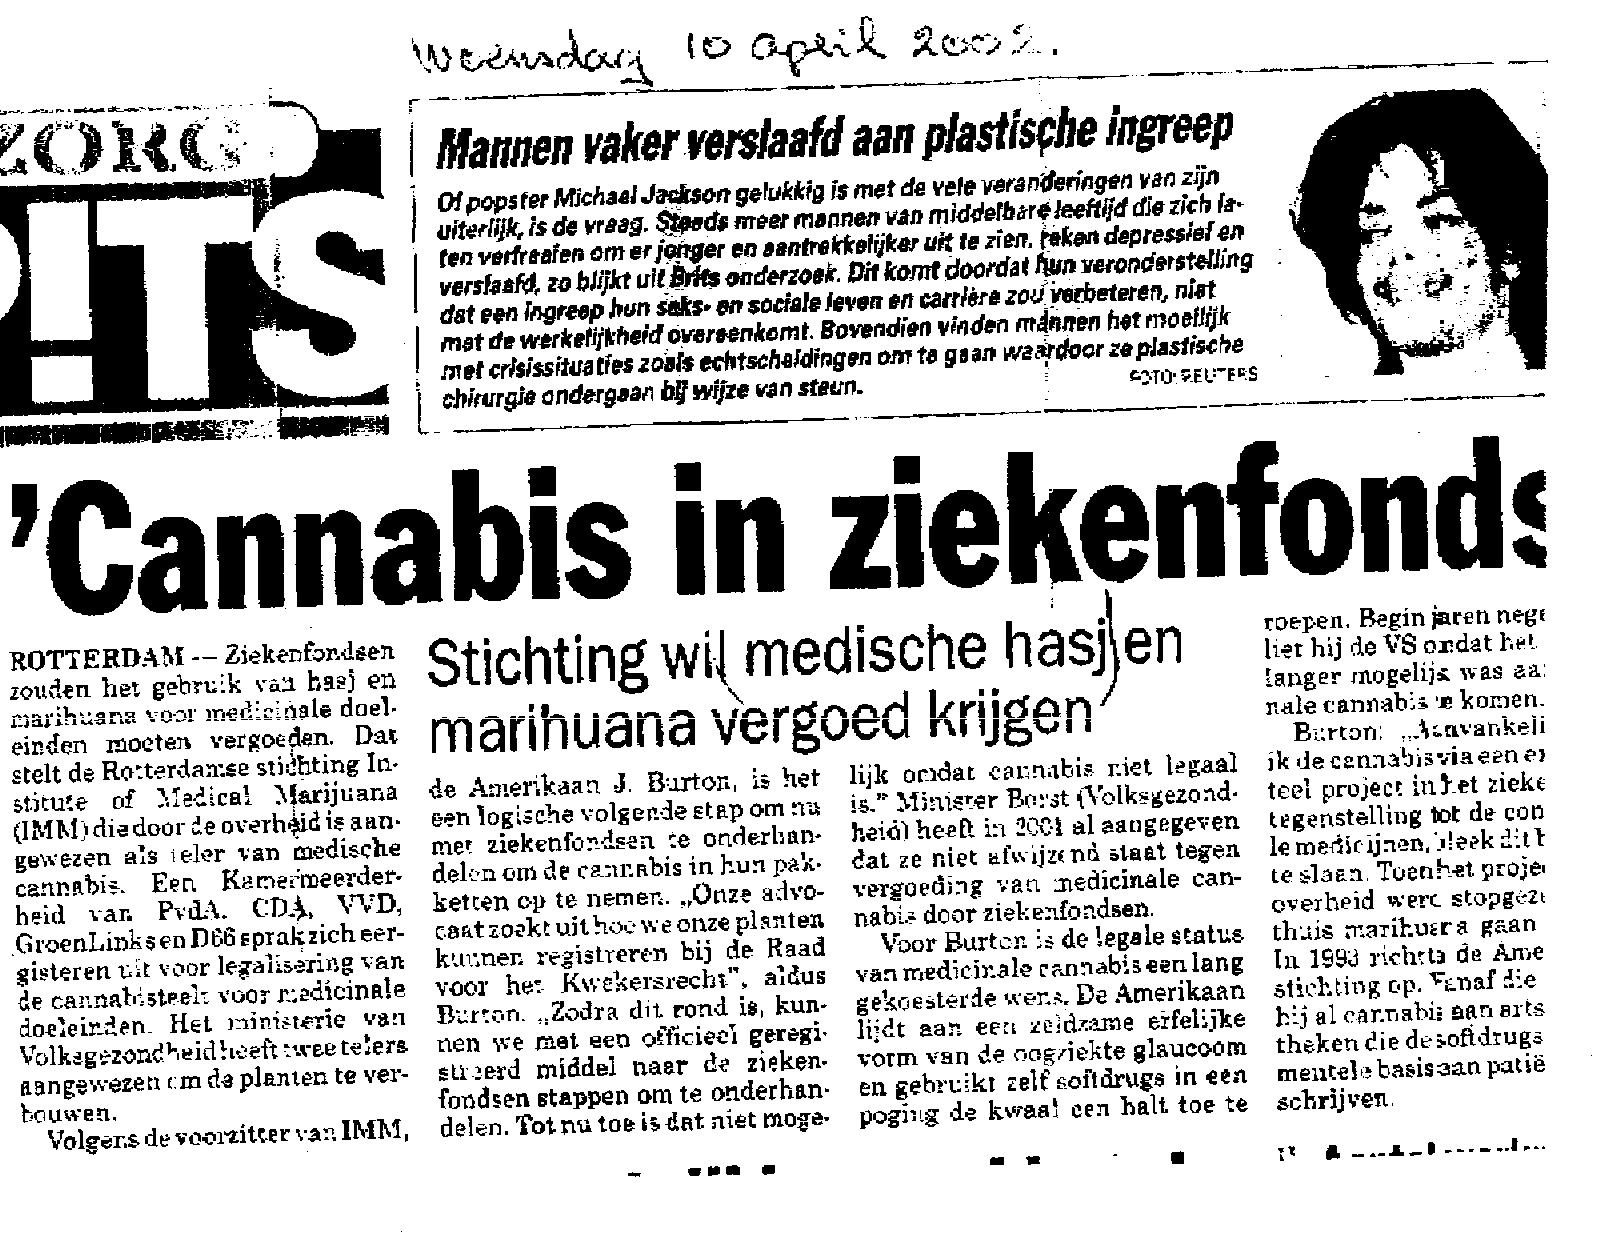 newspaper article April 10, 2002